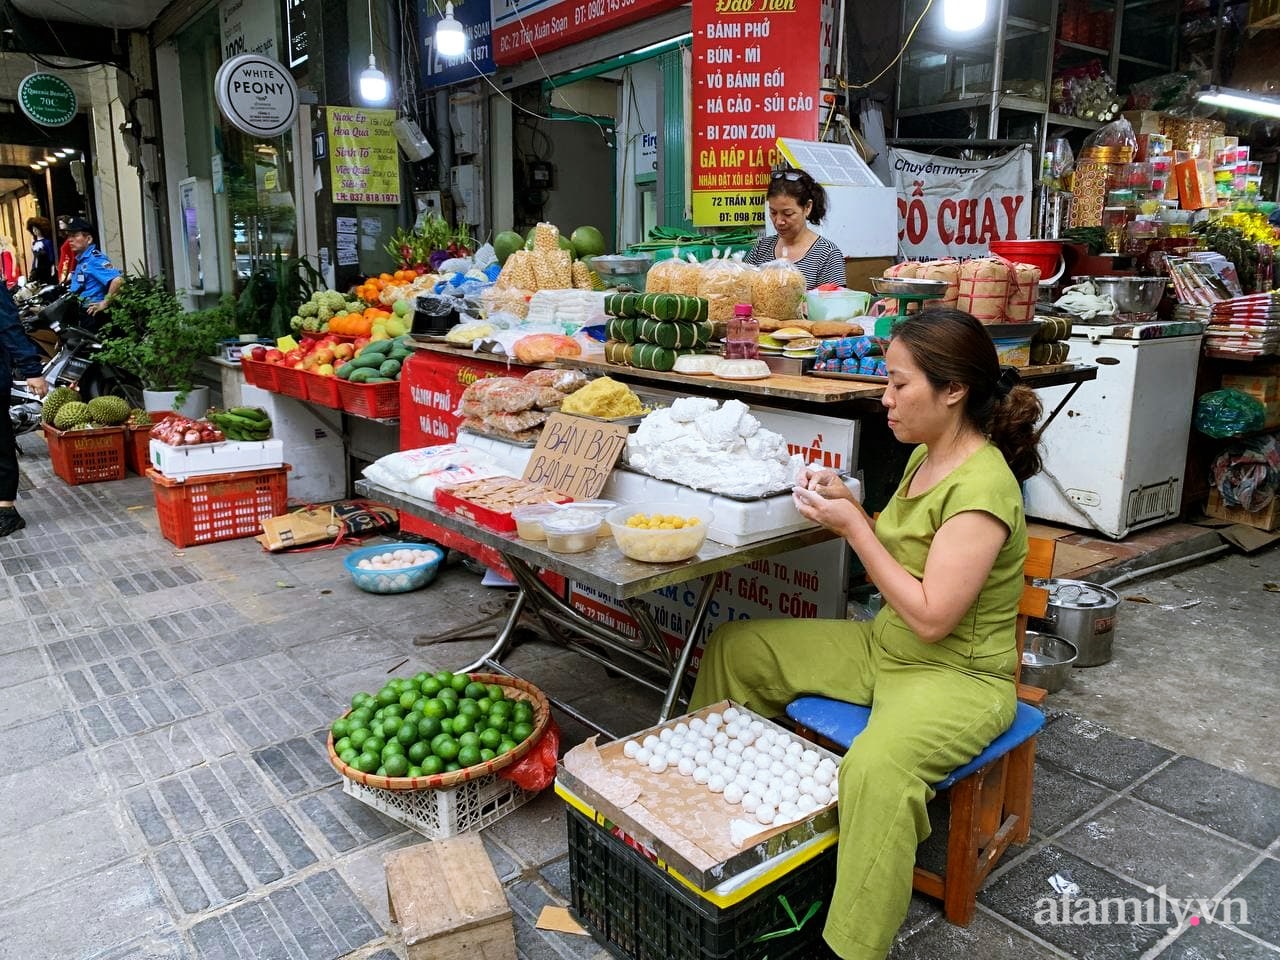 Tết Hàn thực: Ngay từ sớm dân Hà Nội đã nhộn nhịp xếp hàng đi chợ mua bánh trôi bánh chay, sắm đồ cúng lễ - Ảnh 4.